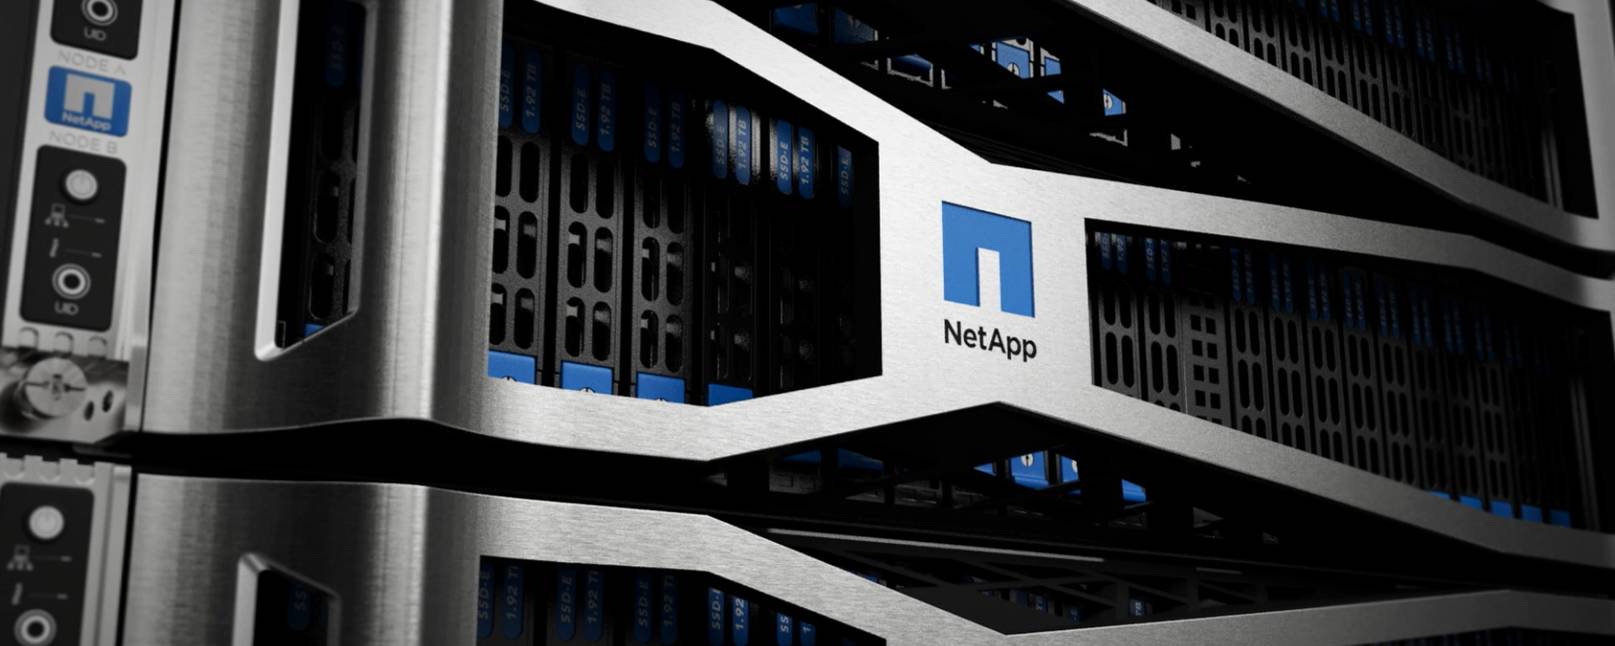 NetApp 数据存储解决方案